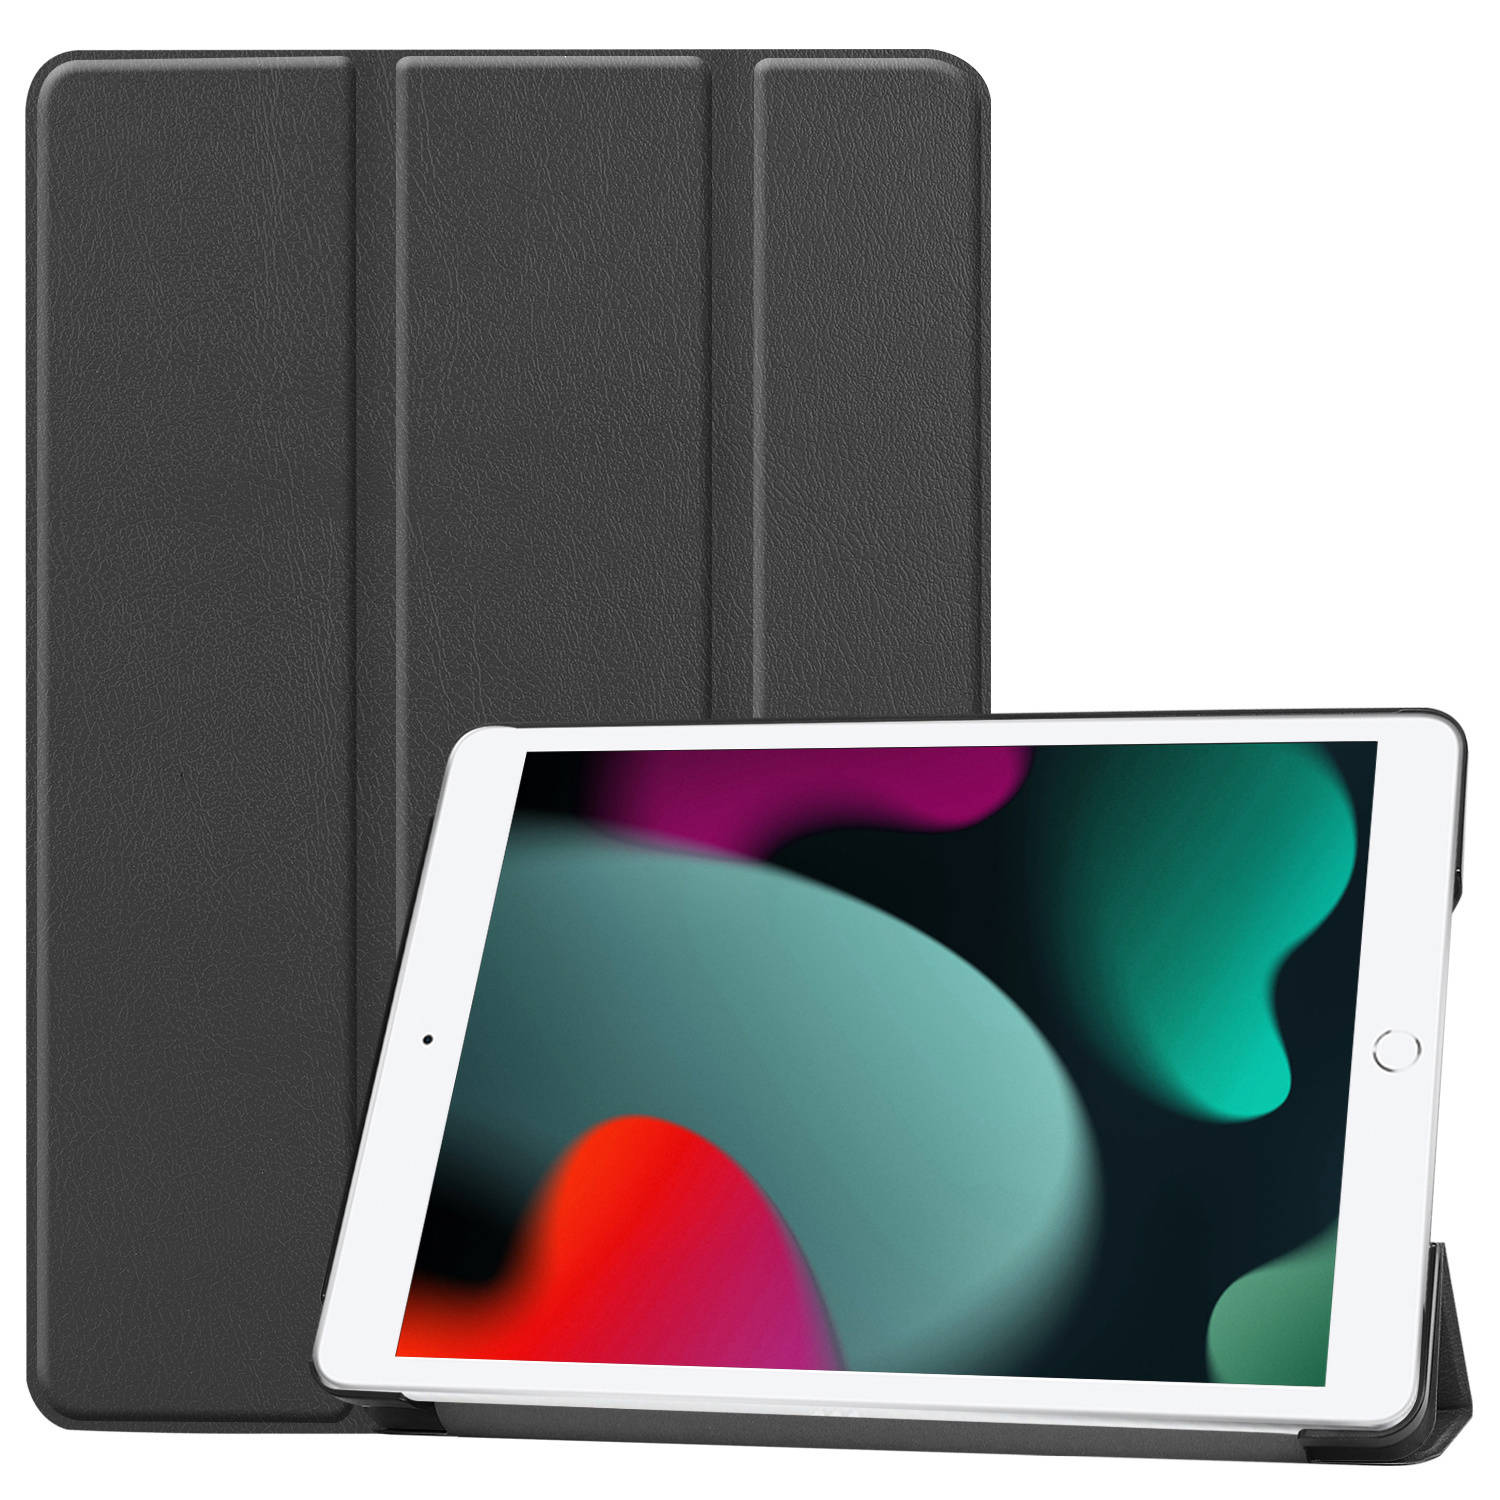 Basey iPad 10.2 2019 Hoes Book Case Hoesje - iPad 10.2 2019 Hoesje Hard Cover Case Hoes - Zwart